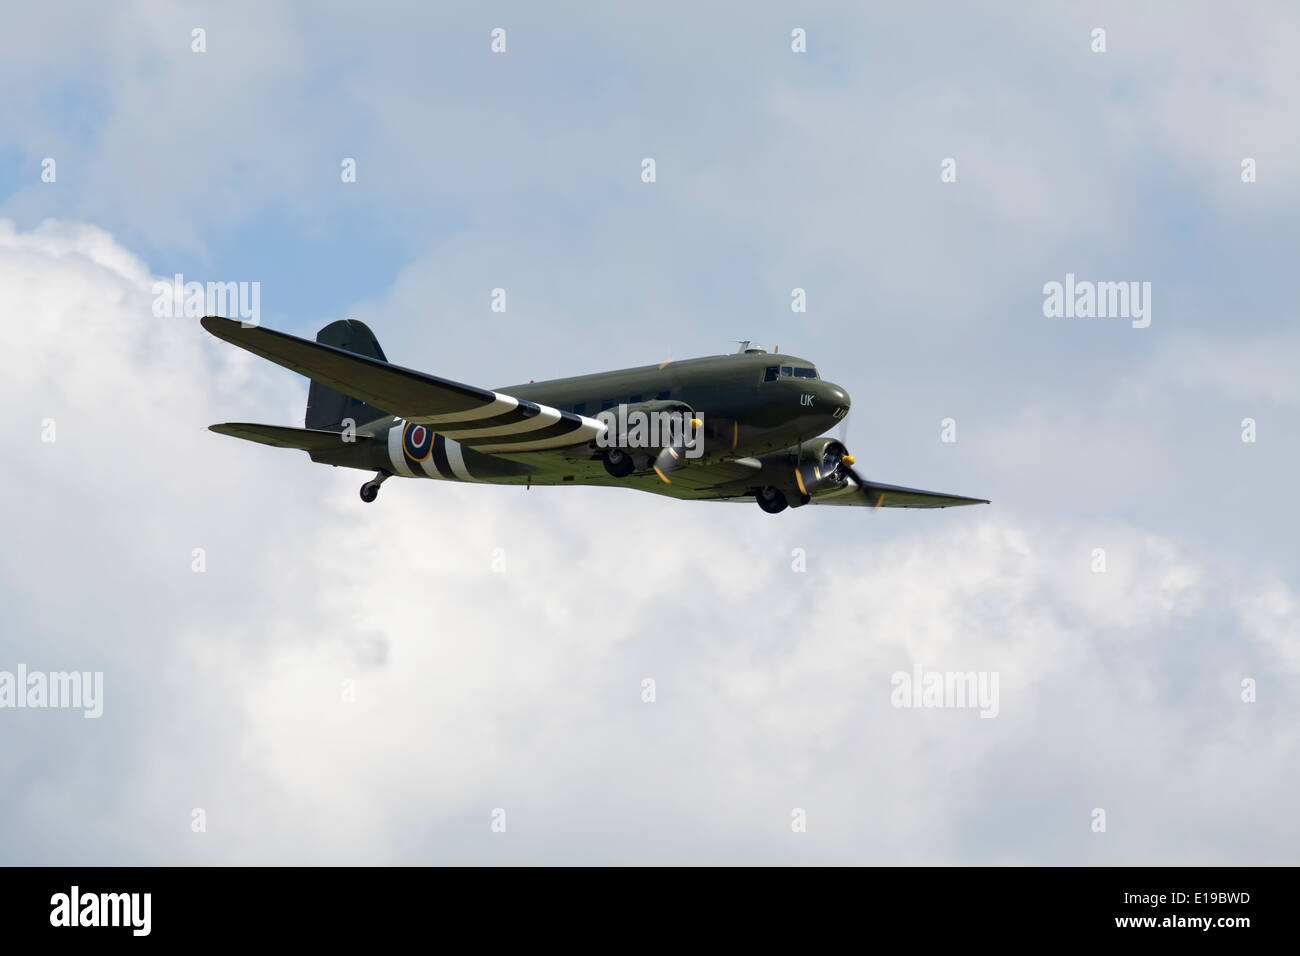 RAF Dakota flying Stock Photo